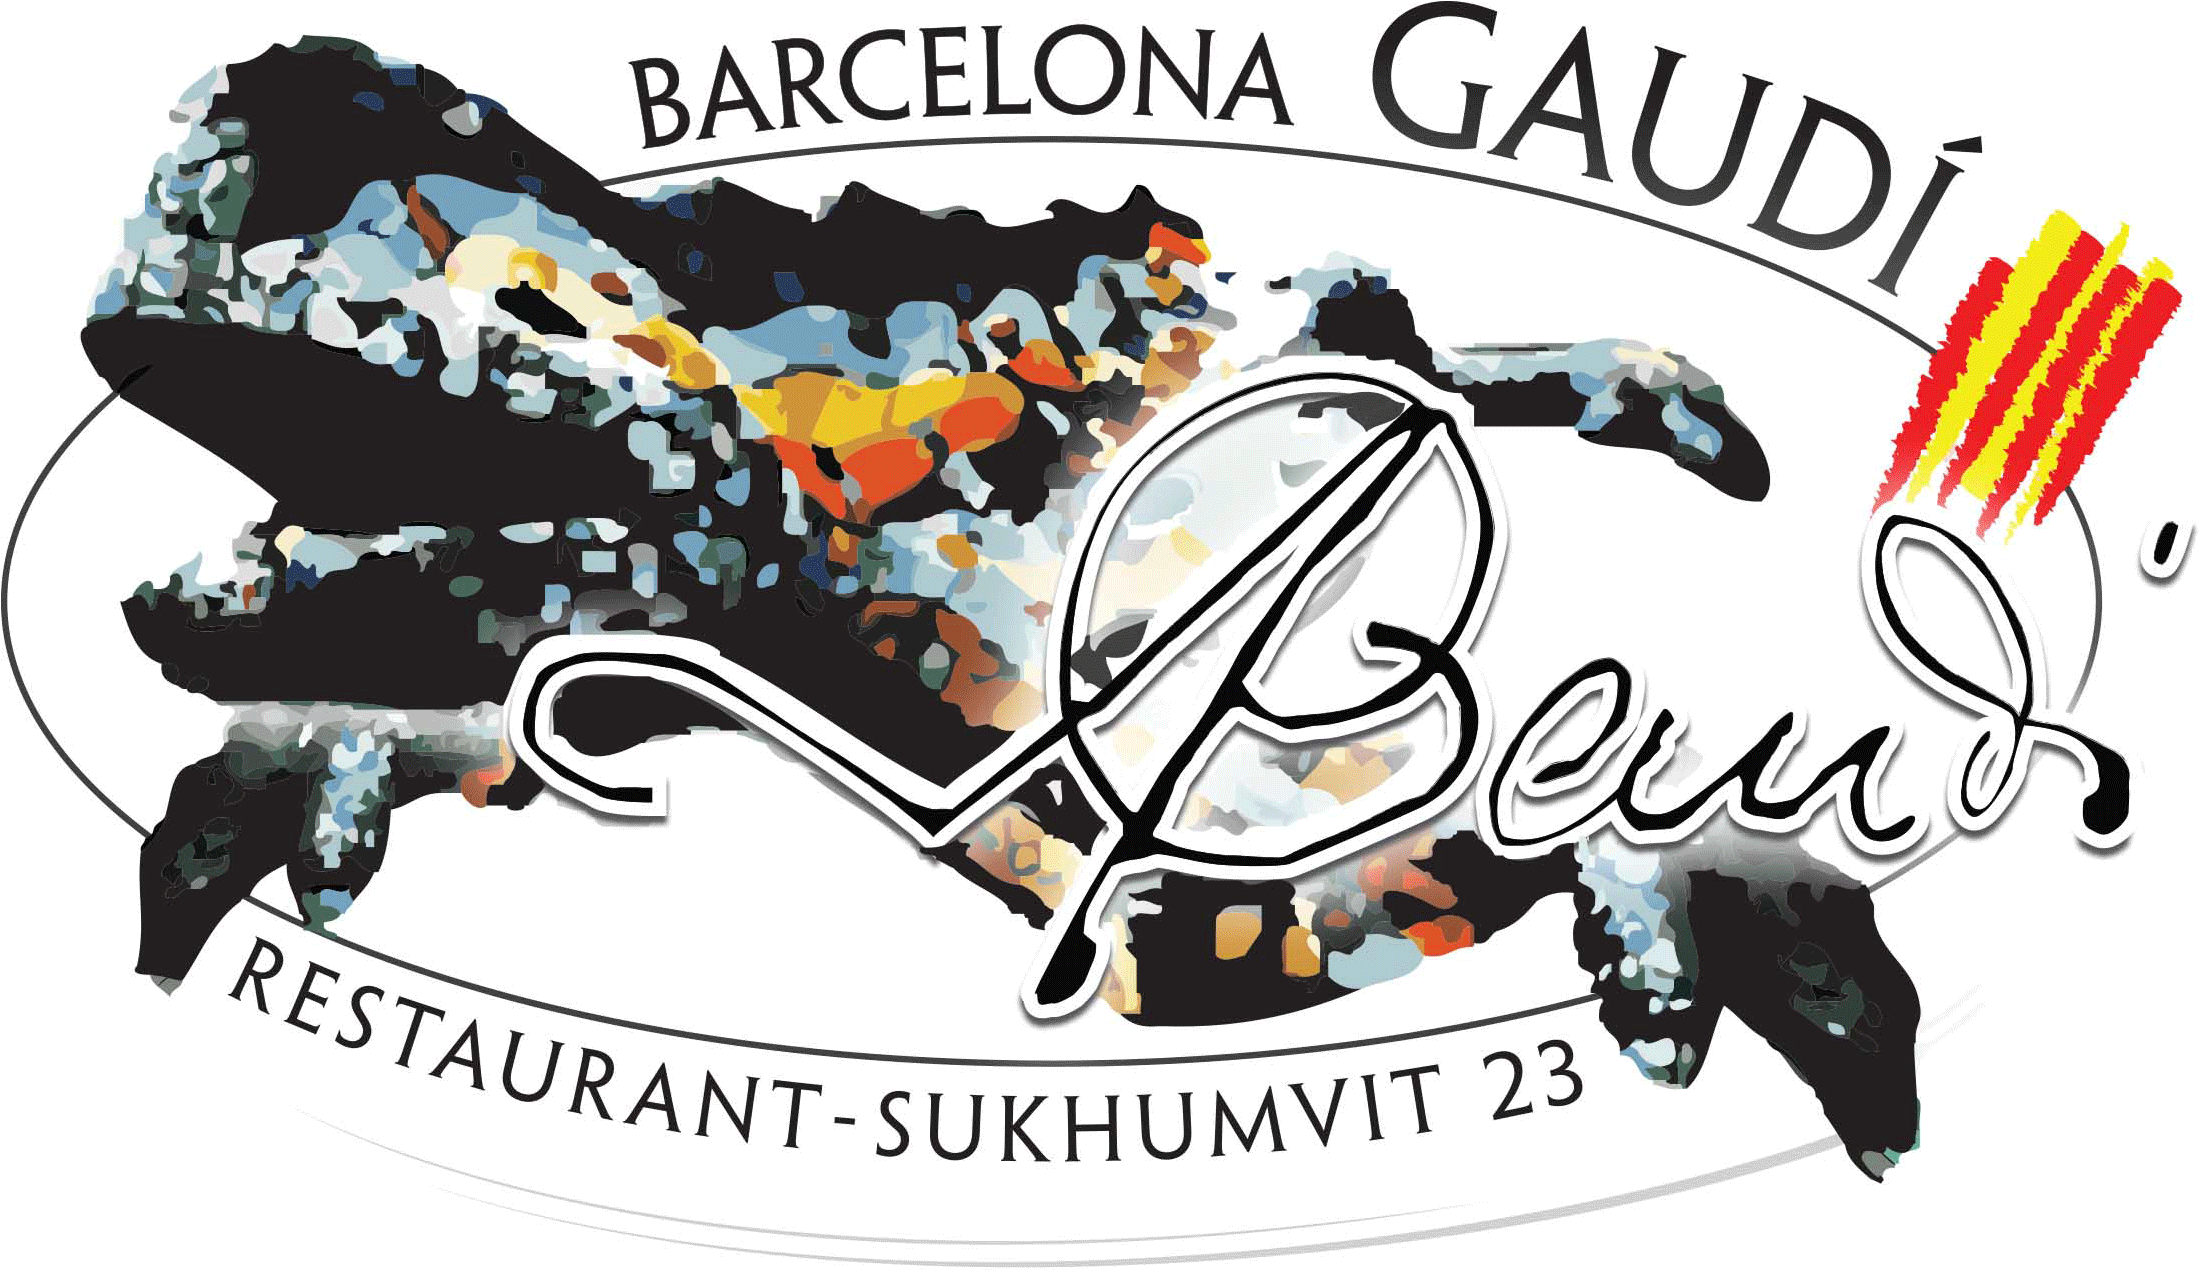 Barcelona Gaudí Restaurant - Cartoon (2344x1269)